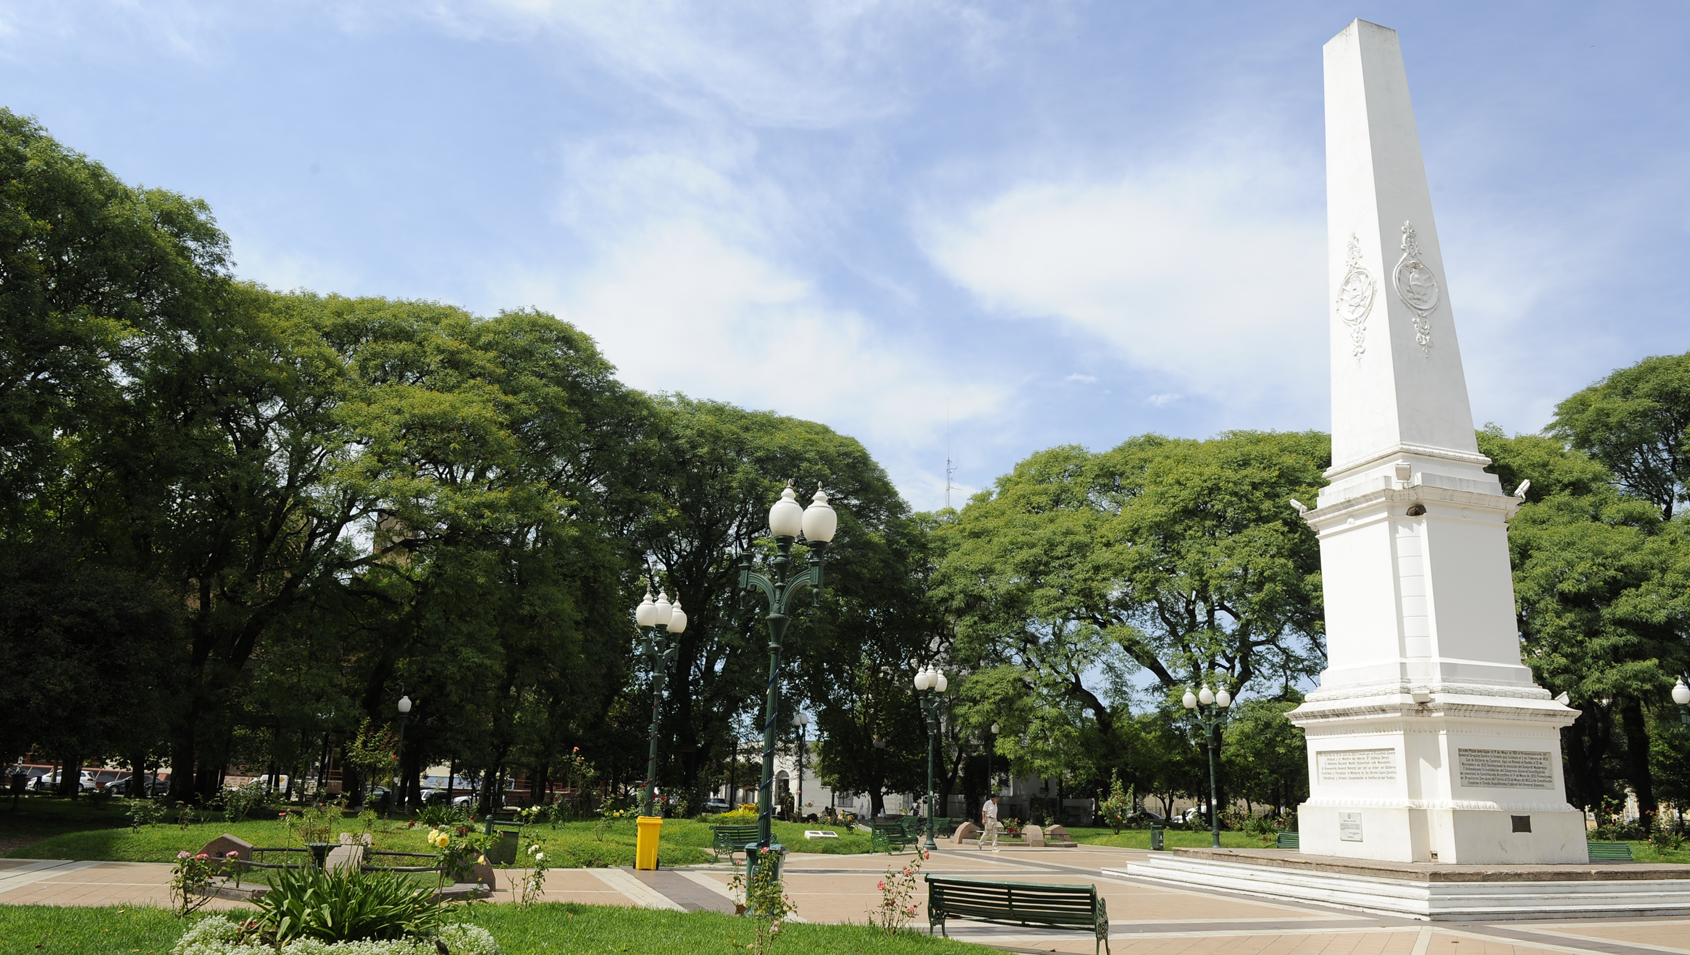 Bienvenidos a "La Historica" Concepción del Uruguay